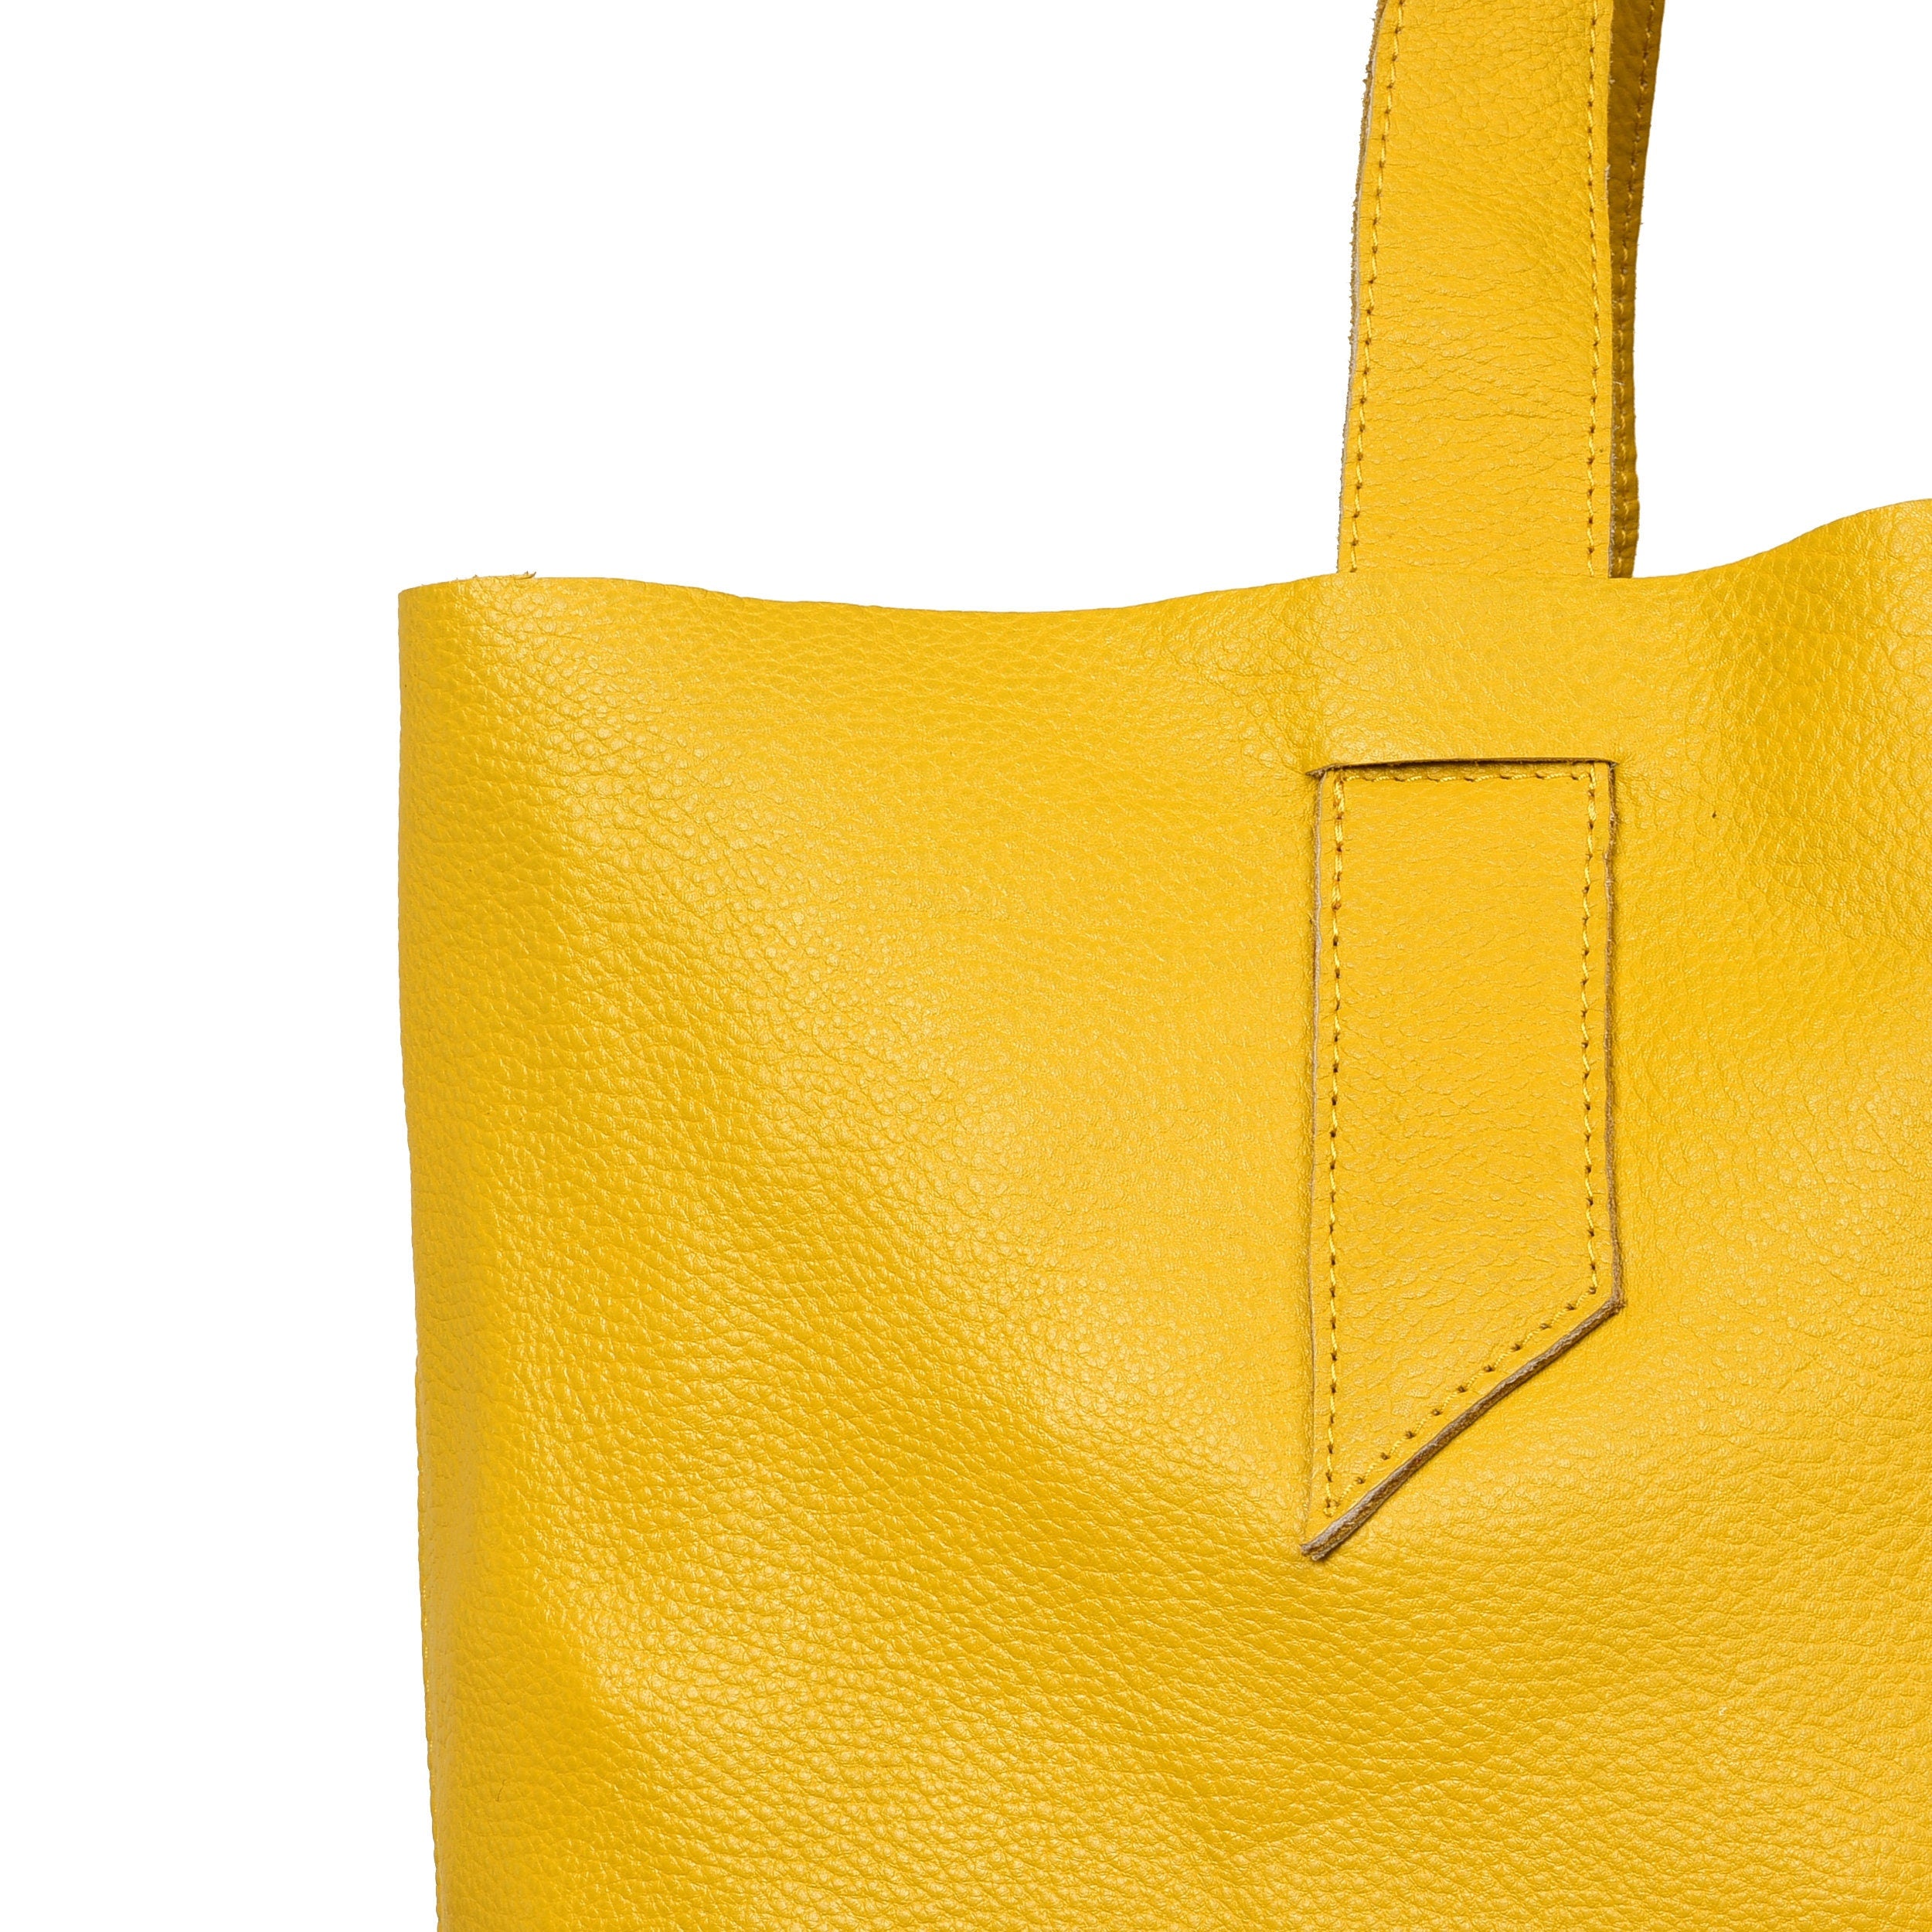 Adeleshop | Leather handbags, Yellow leather bag, Yellow handbag